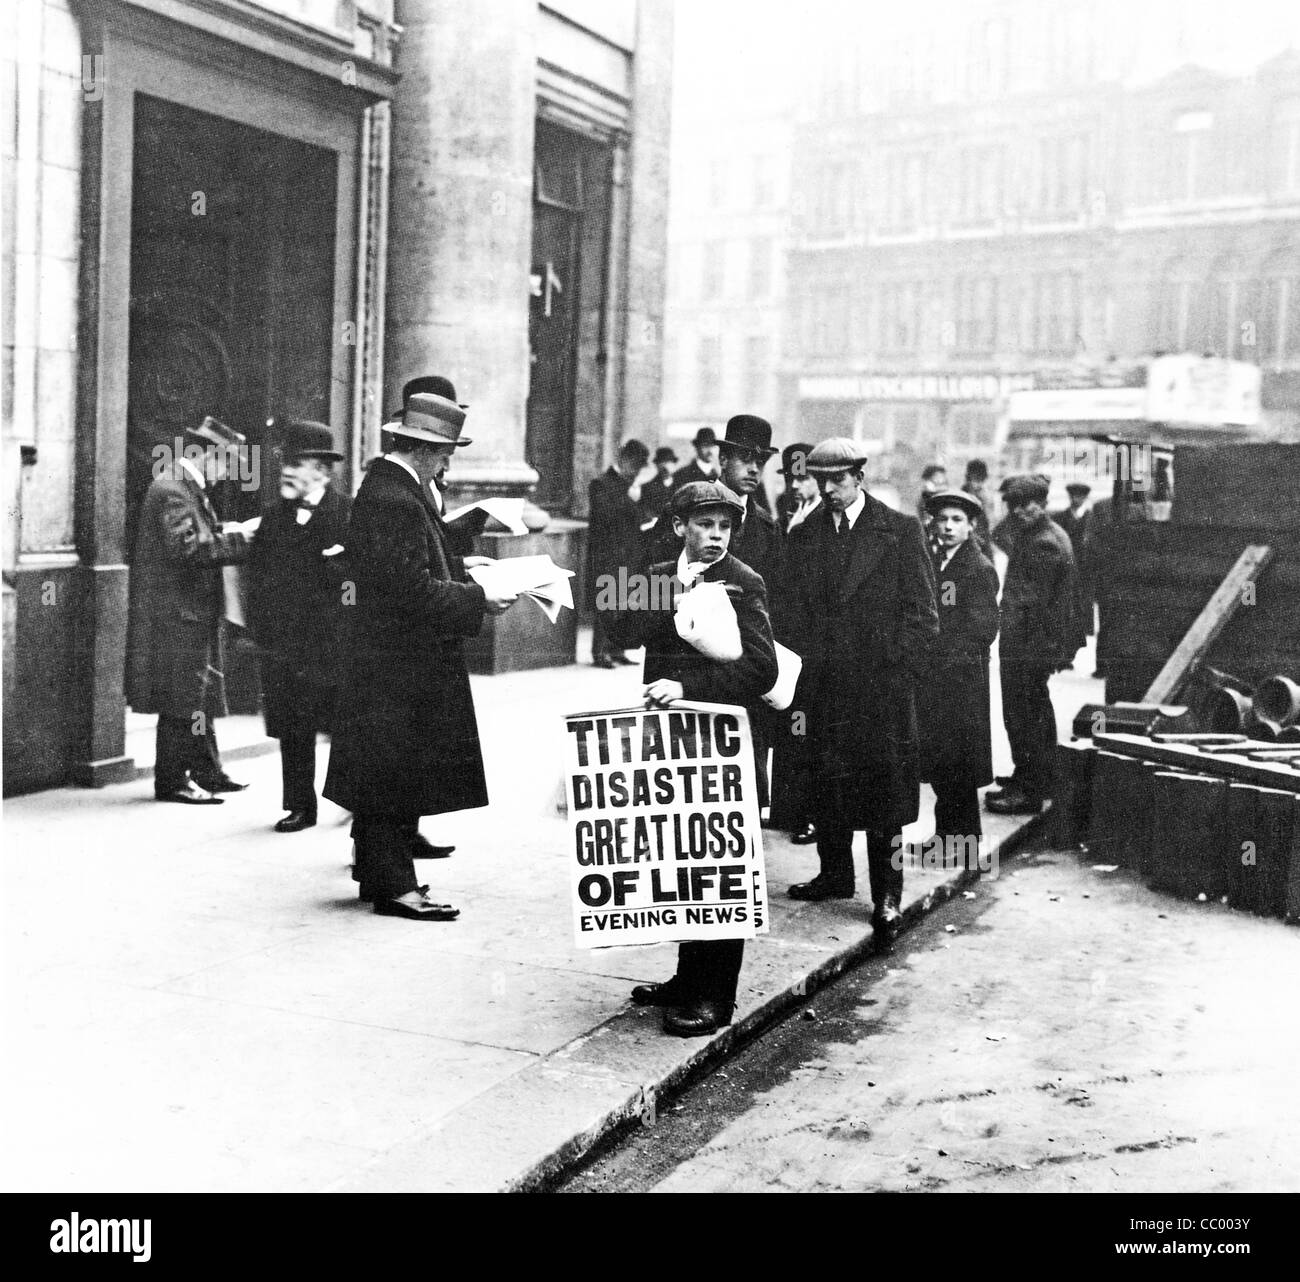 Crieur, 1912 Catastrophe Titanic, se dresse devant le siège de la White Star Line dans la rue Cockspur côté de Trafalgar Square Banque D'Images